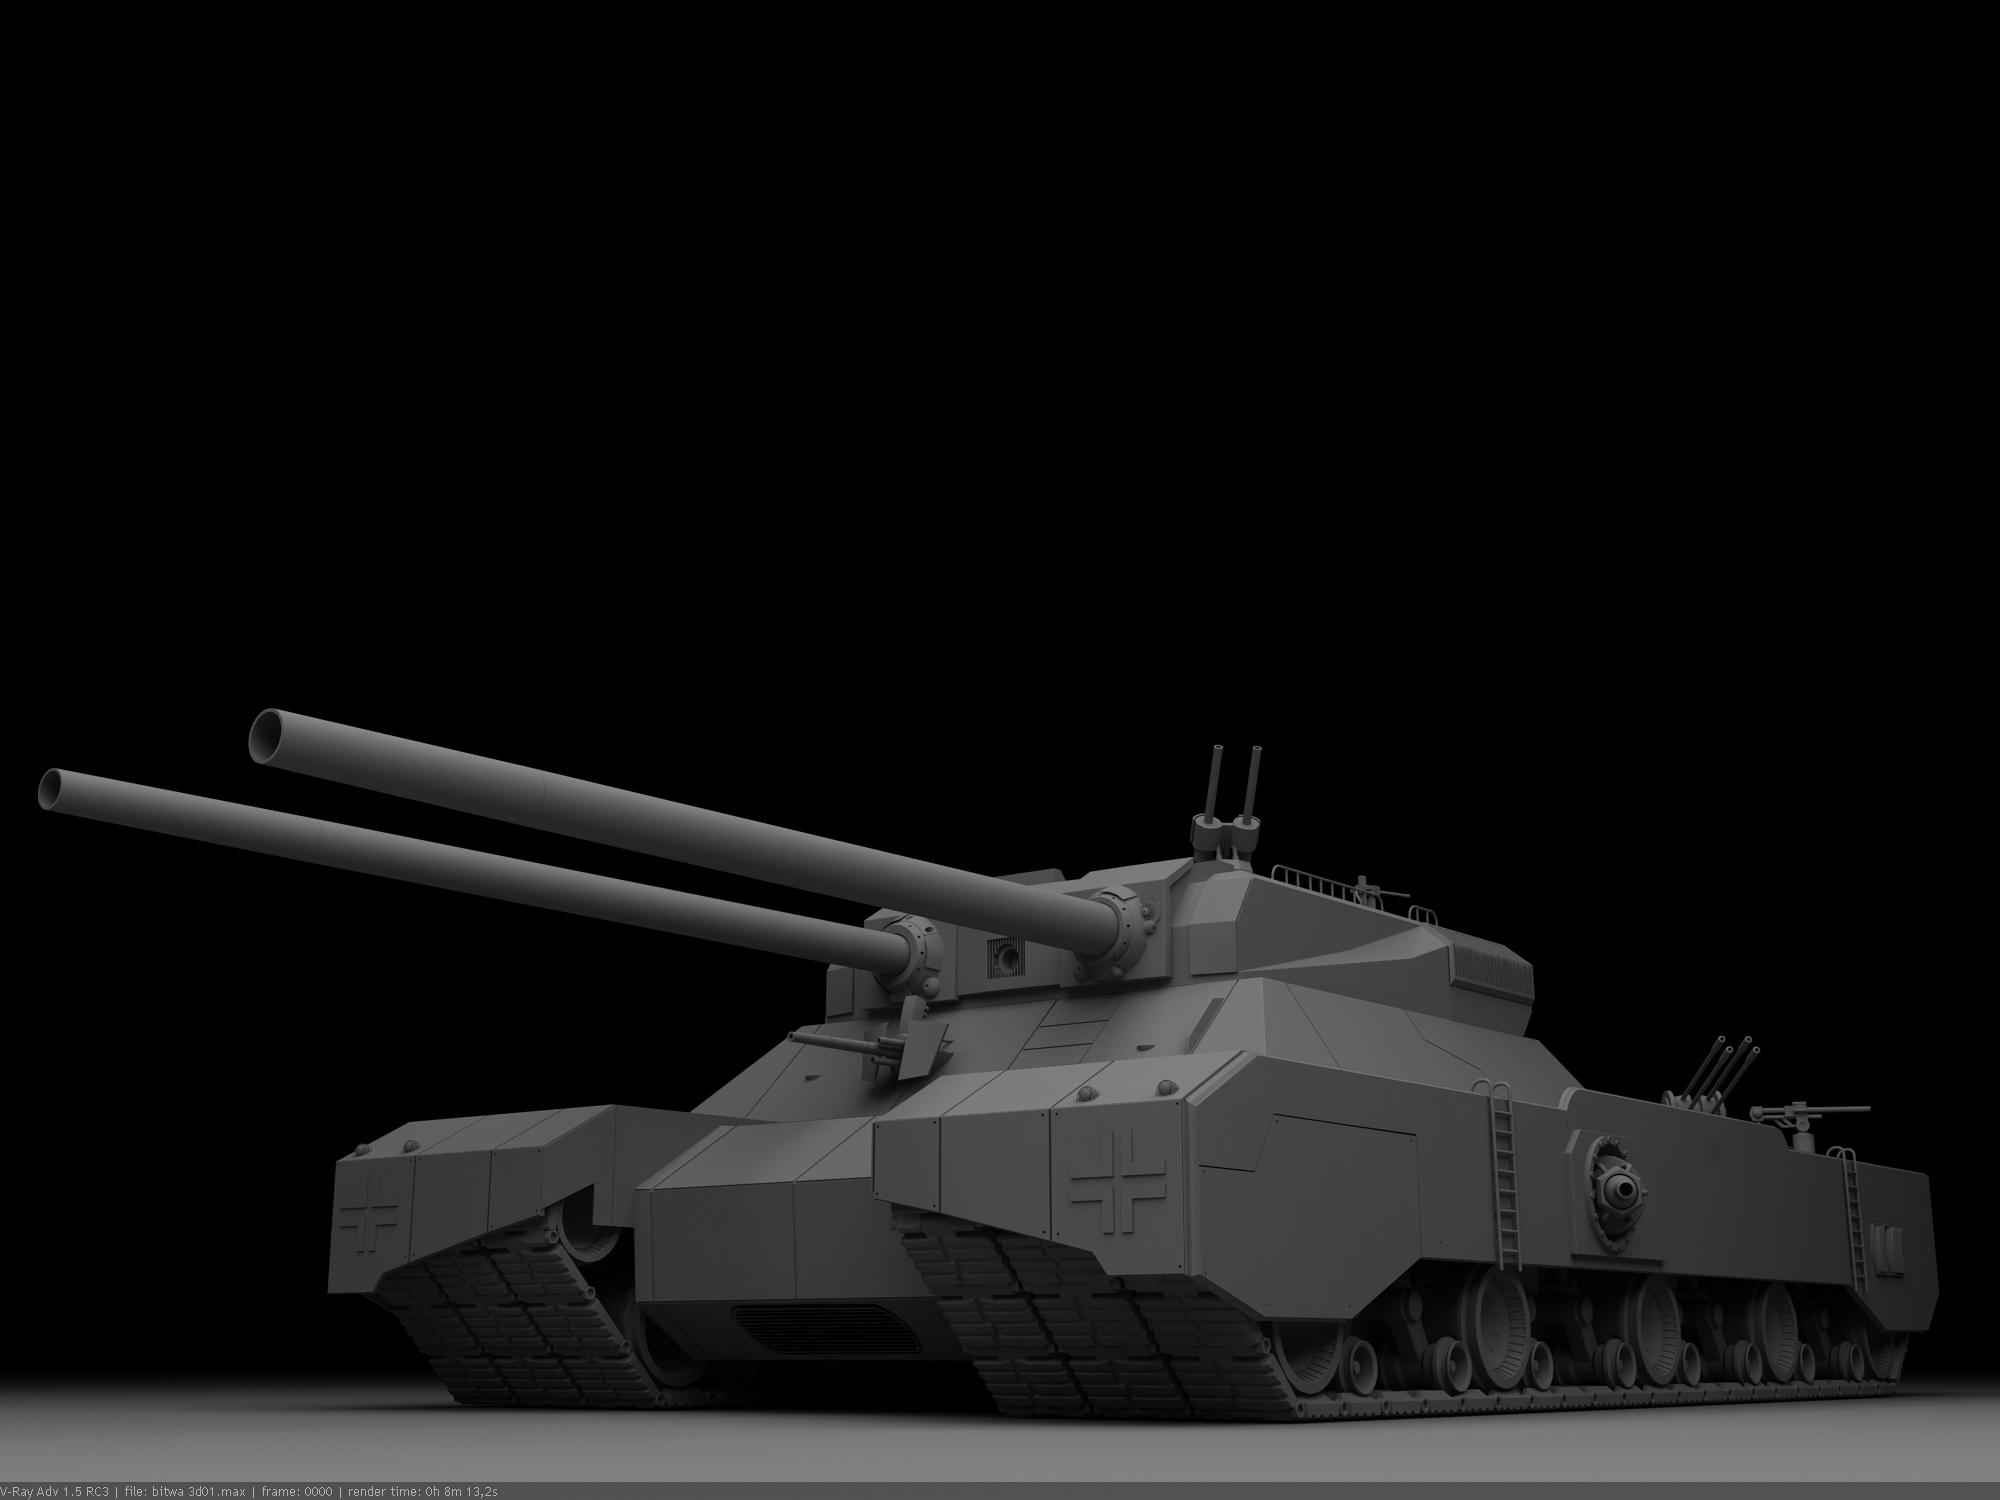 Foto Tanks Landkreuzer P.1000 Ratte grijze 3D afbeelding Militair tank Grijs 3D graphics 3D afbeeldingen